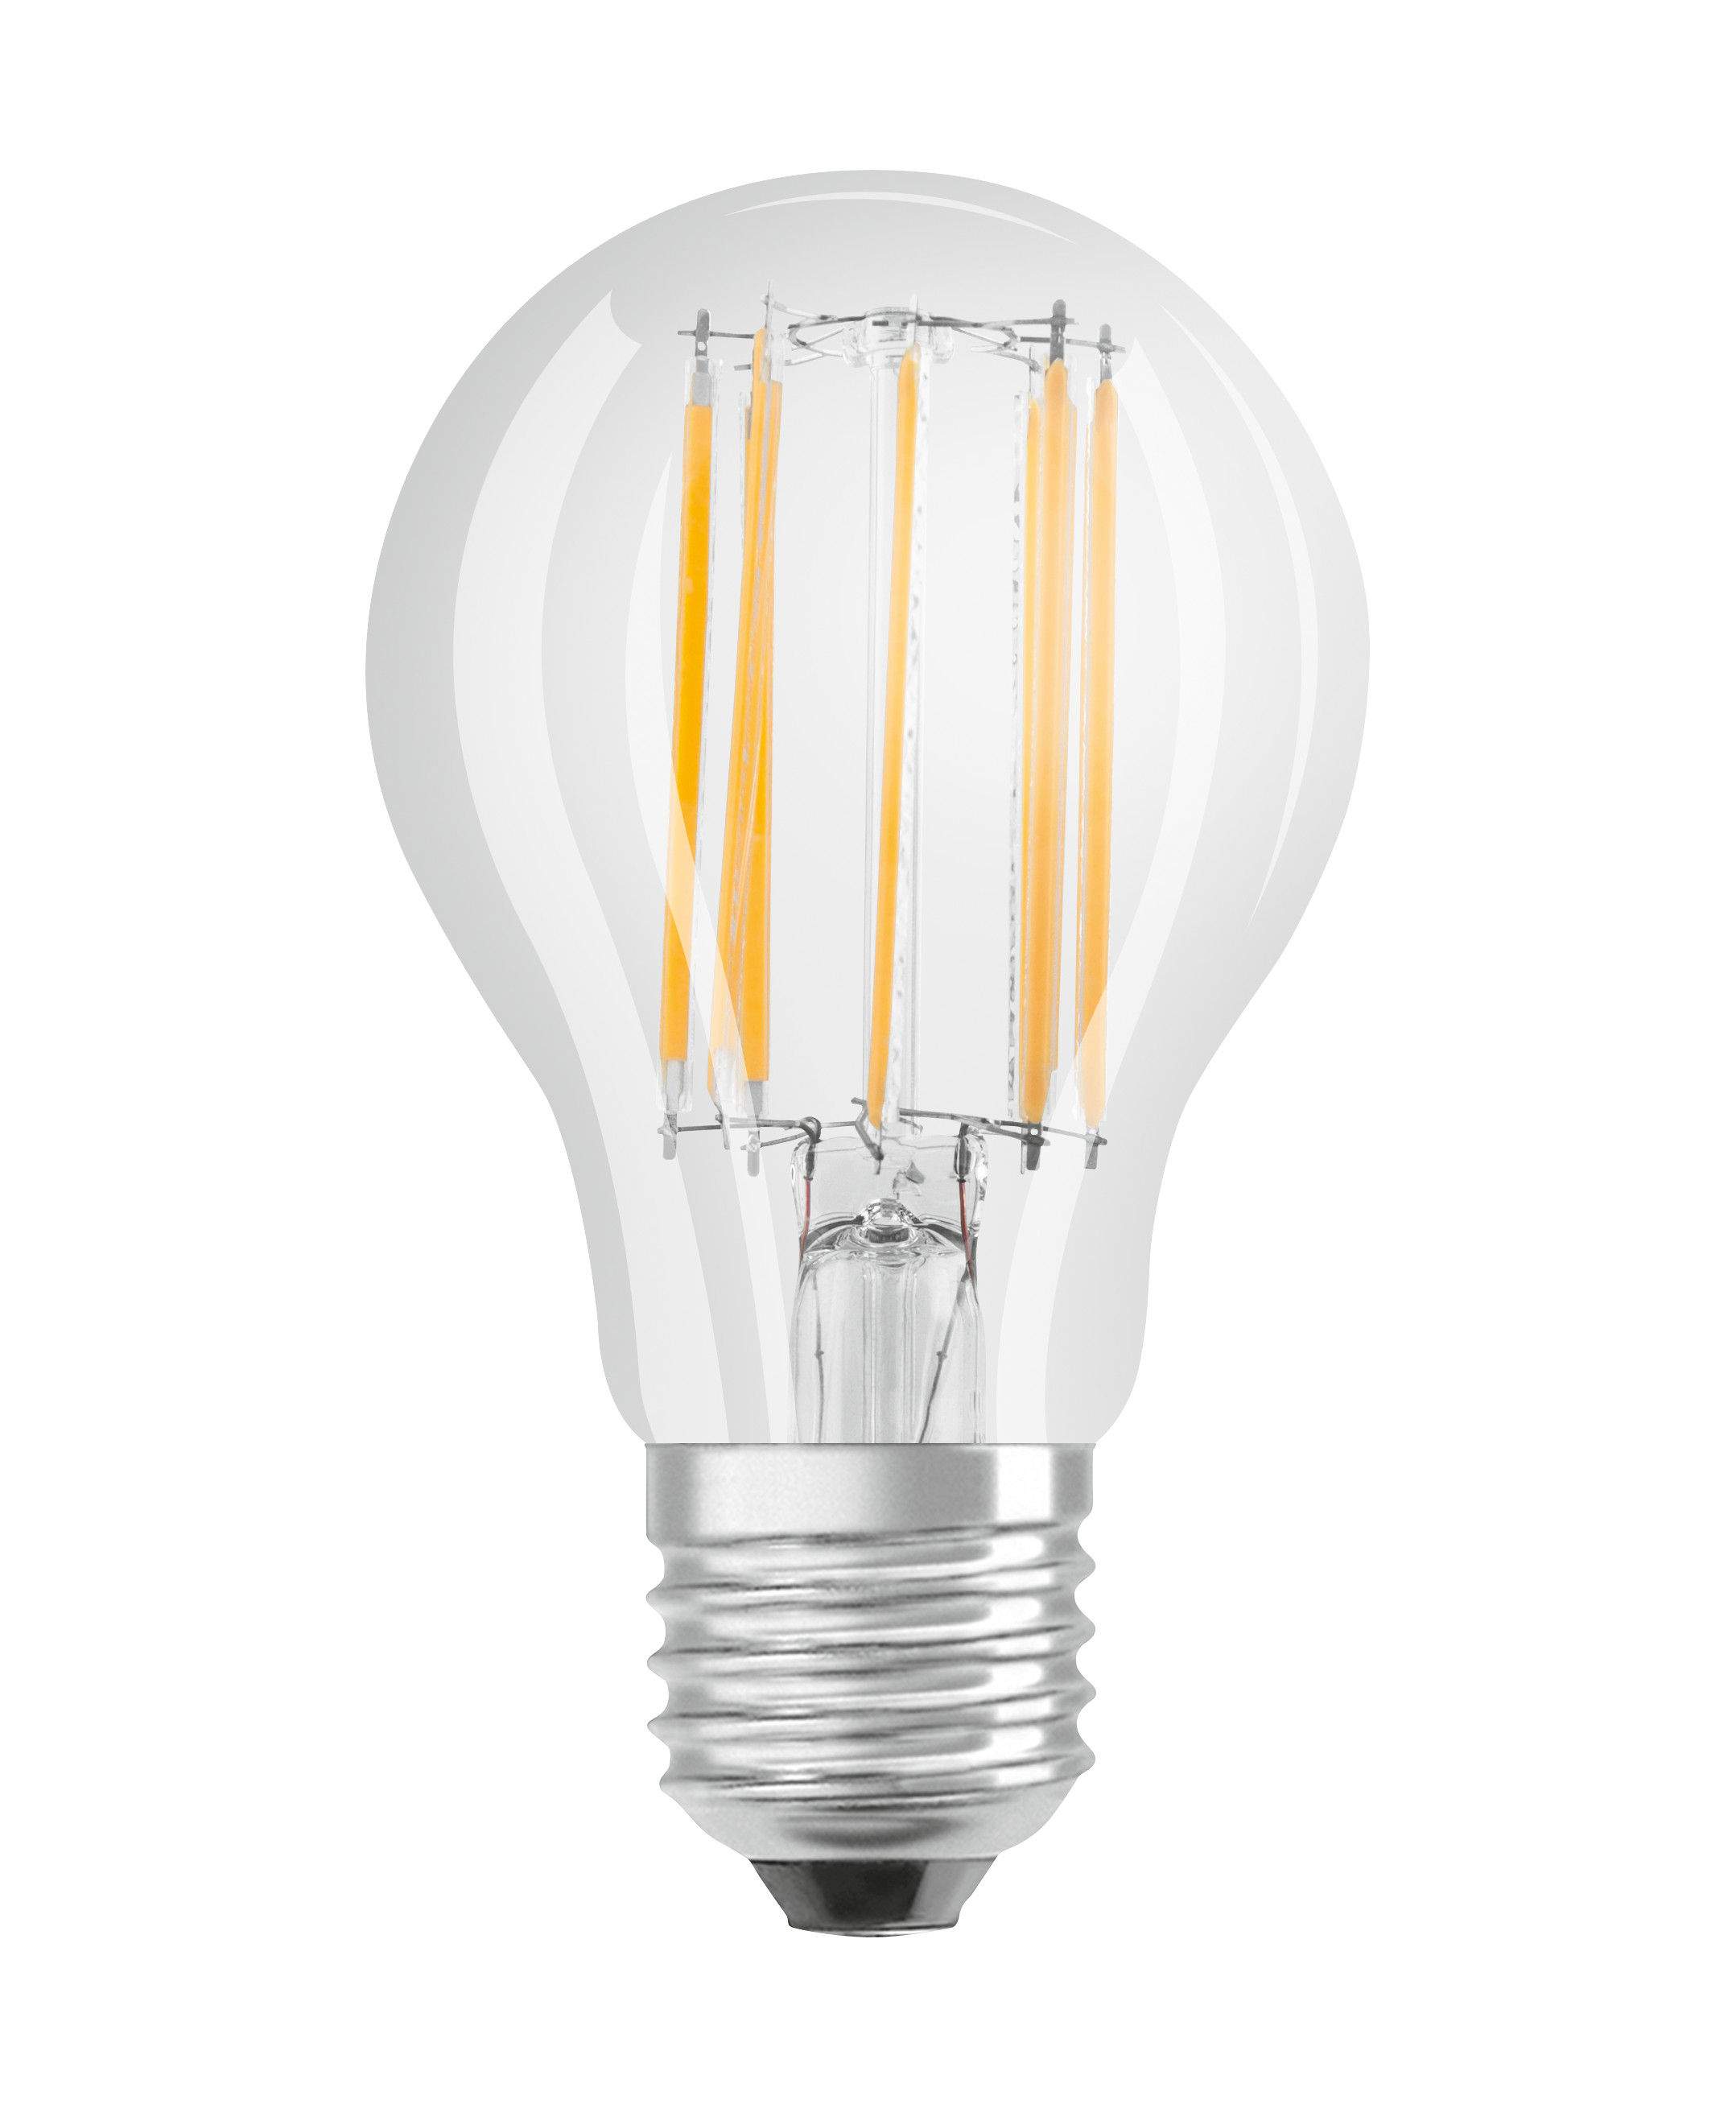 E27 standard clear glass LED bulb, 6.5W, cool white.